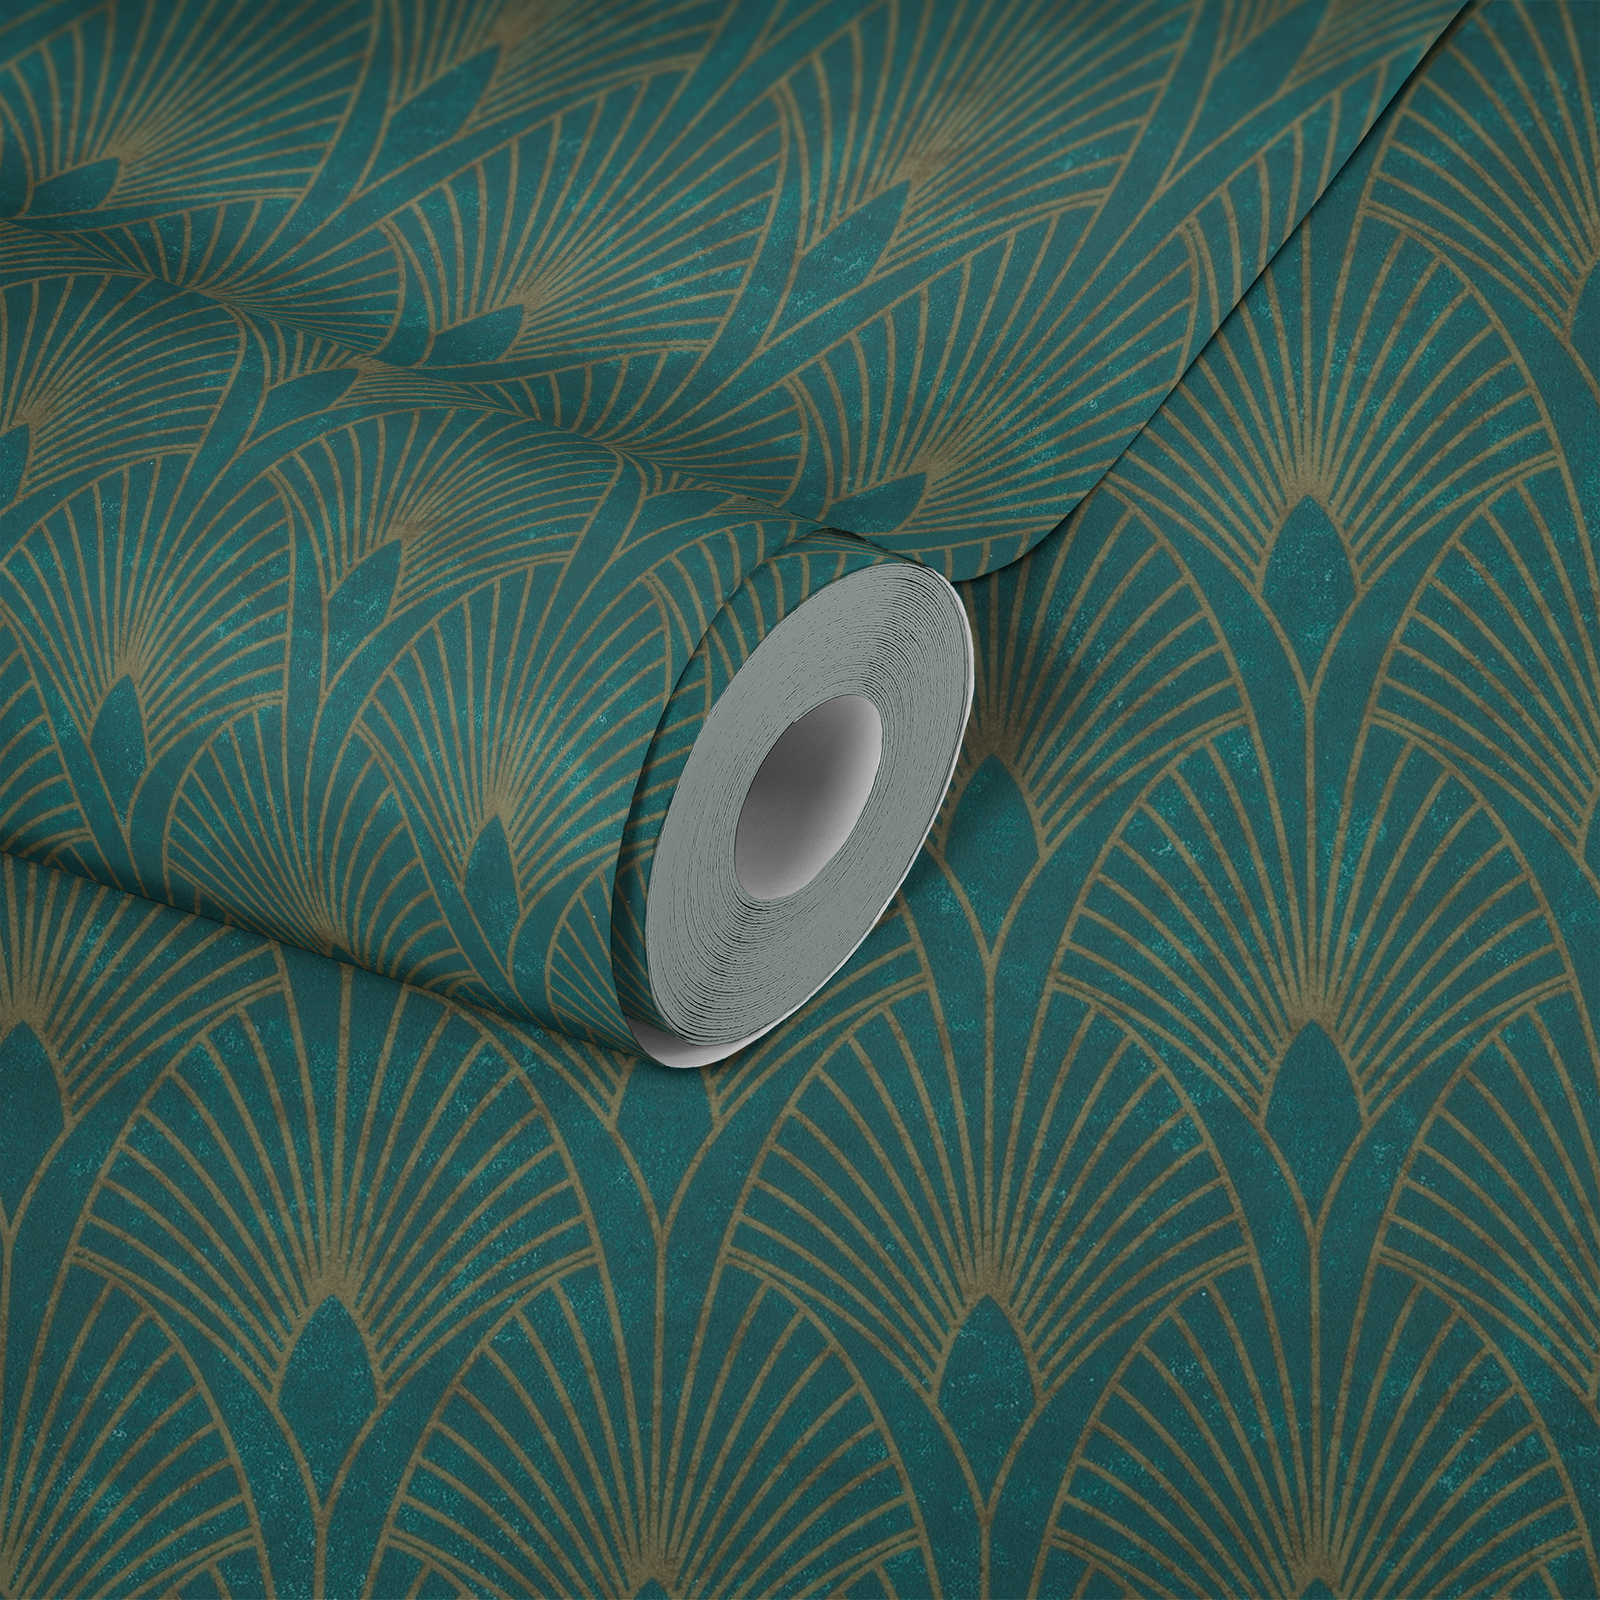             Selbstklebende Tapete | Art-Déco Design mit Metallic Effekt – Grün, Metallic
        